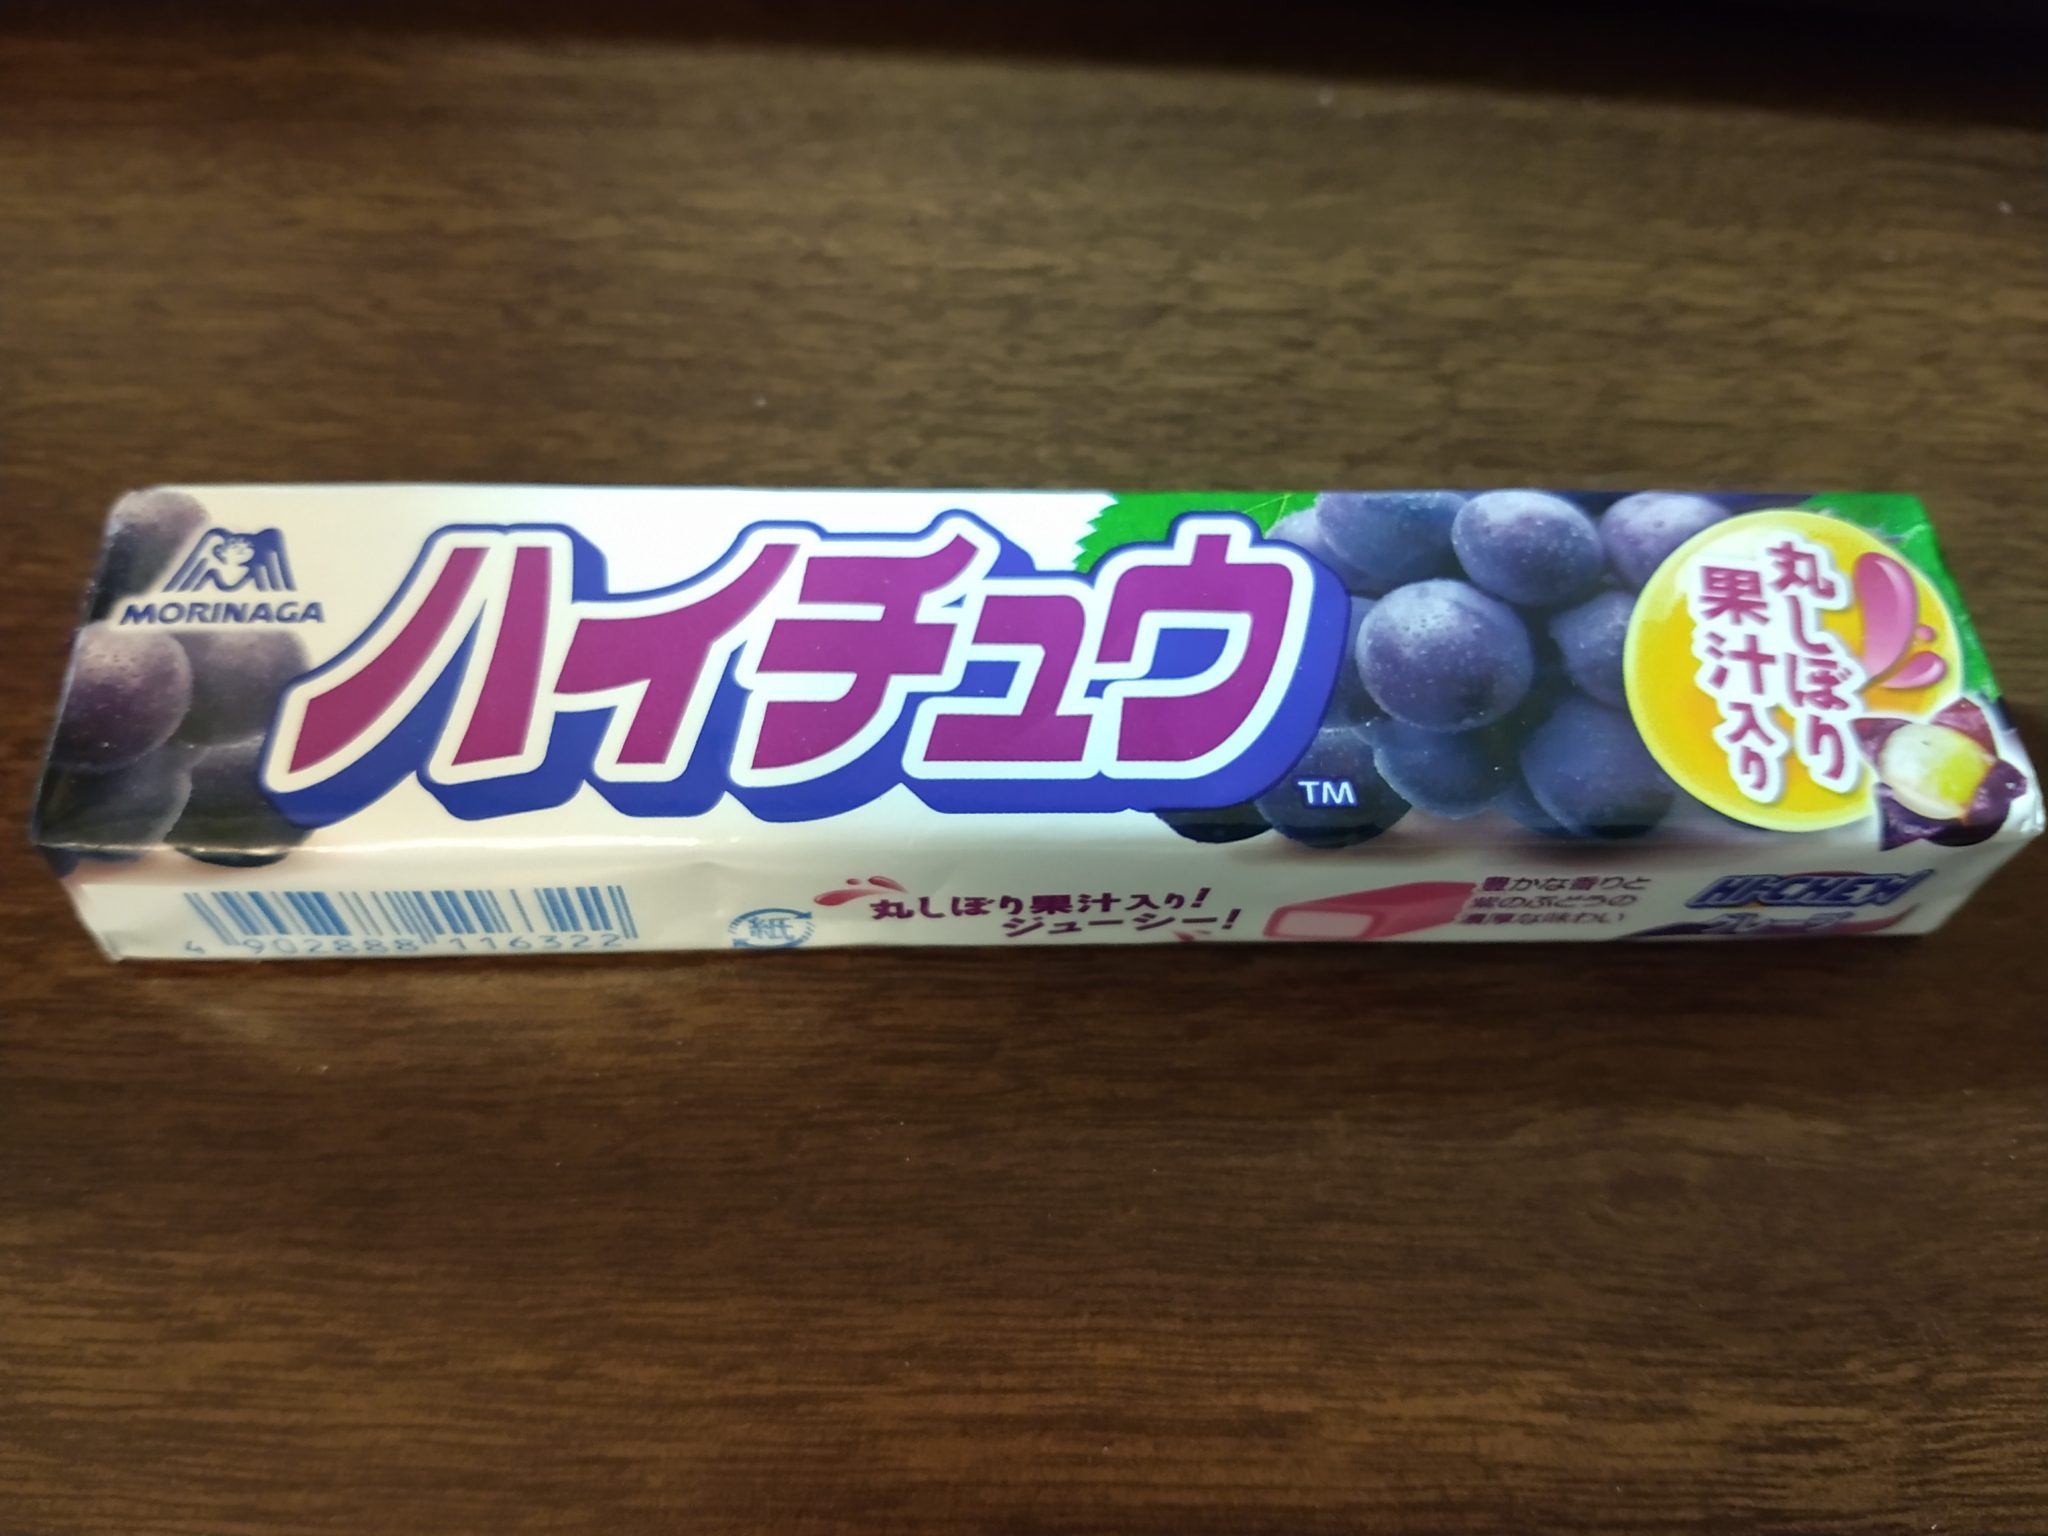 Hi-Chew – Grape